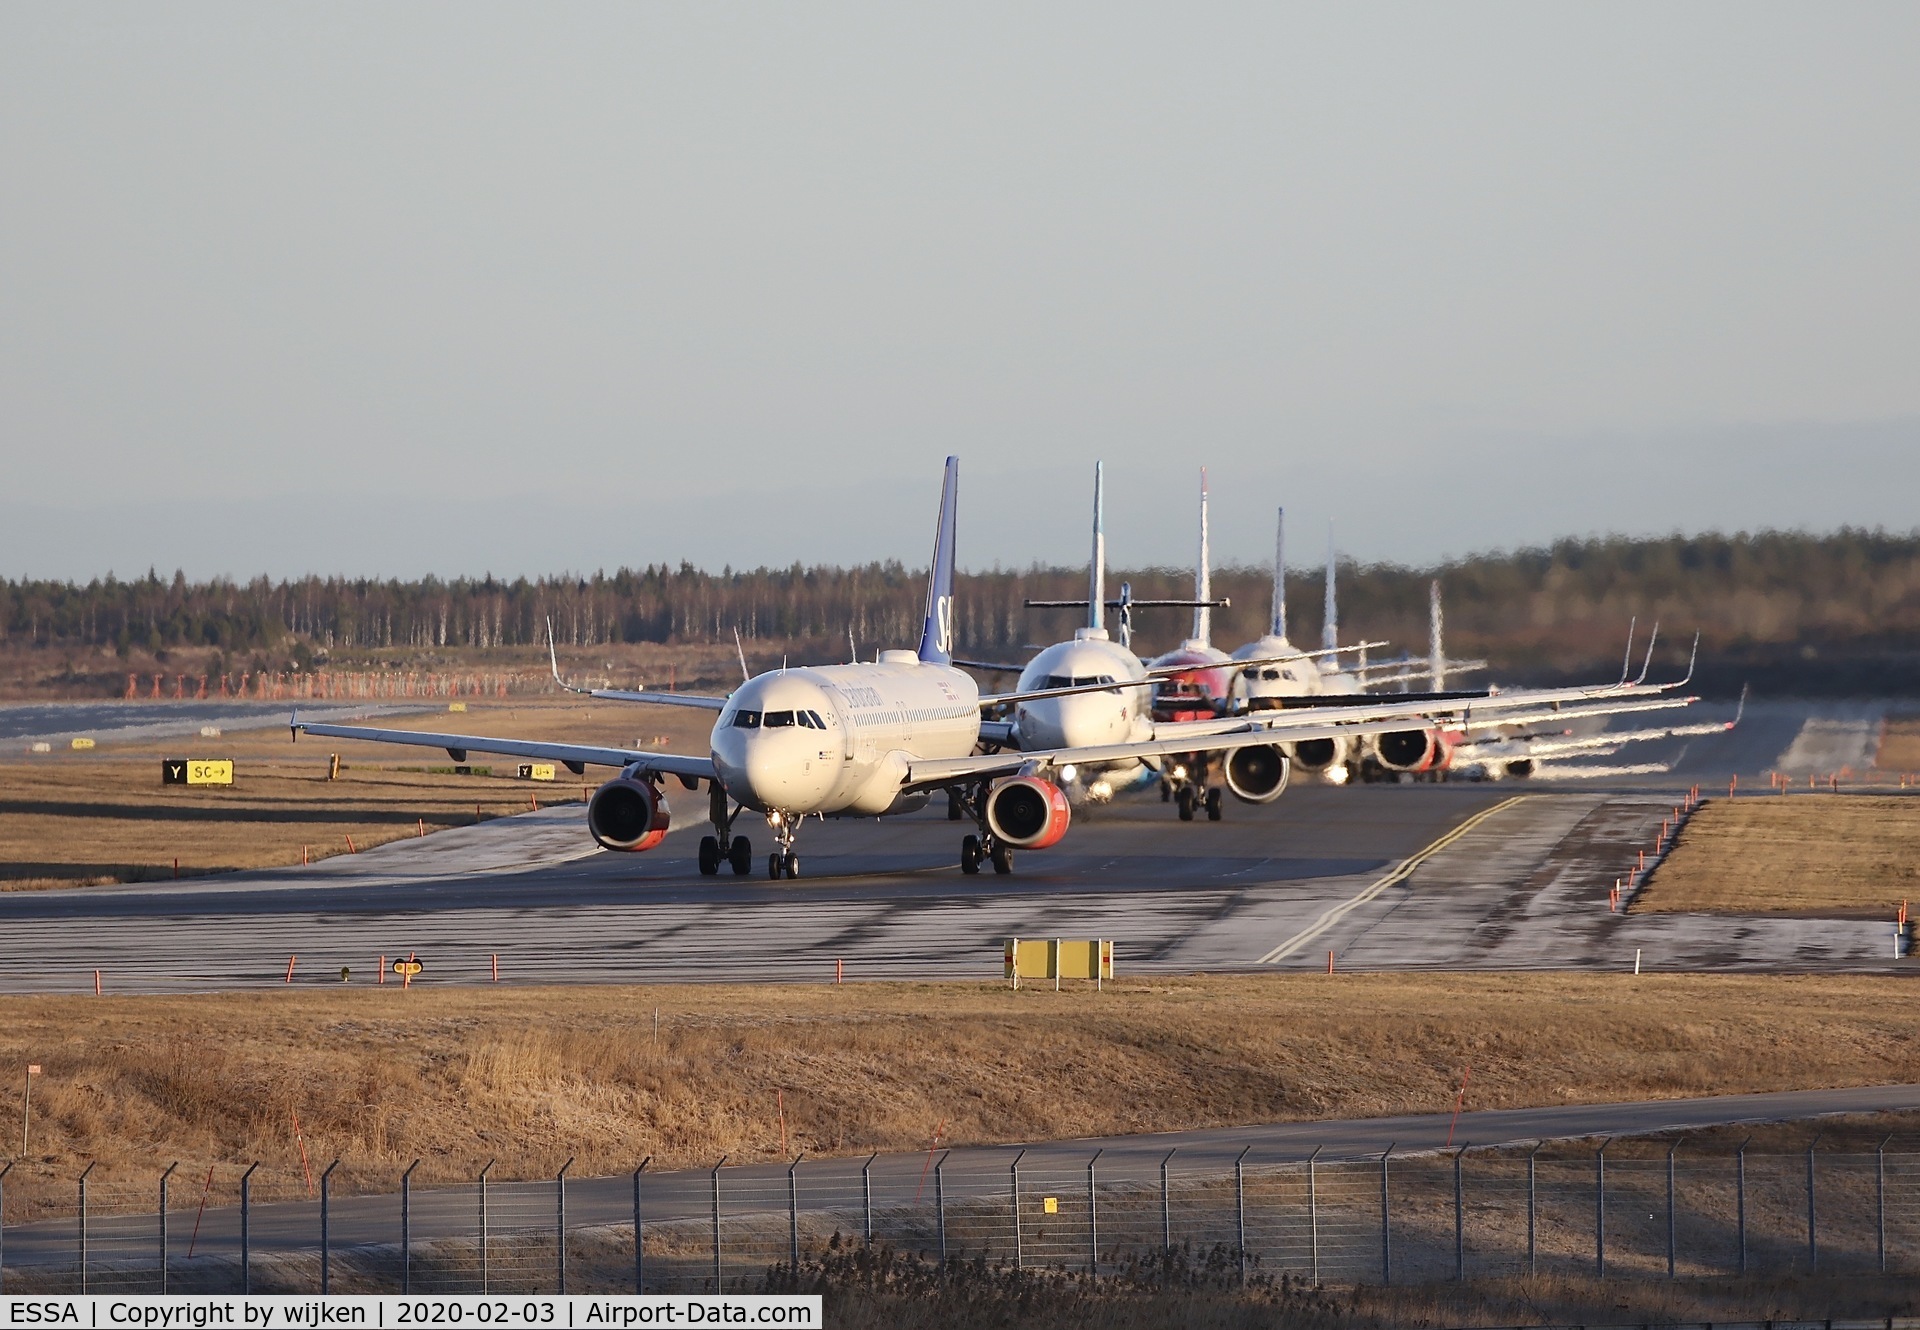 Stockholm-Arlanda Airport, Stockholm Sweden (ESSA) - Morning departures RWY 01L